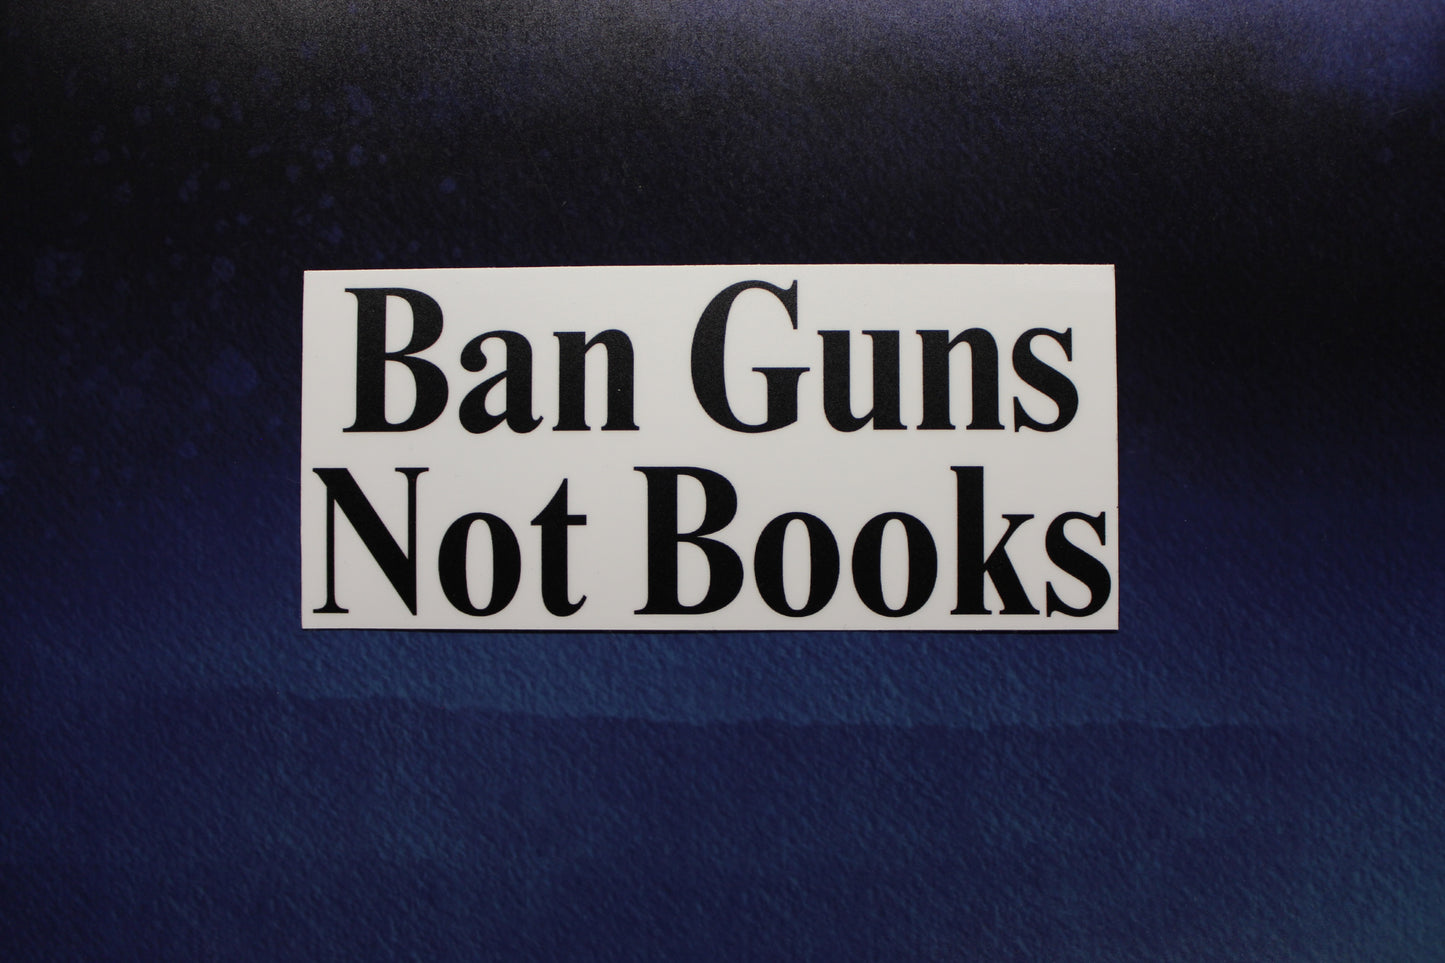 Ban Guns Not Books Vinyl Sticker